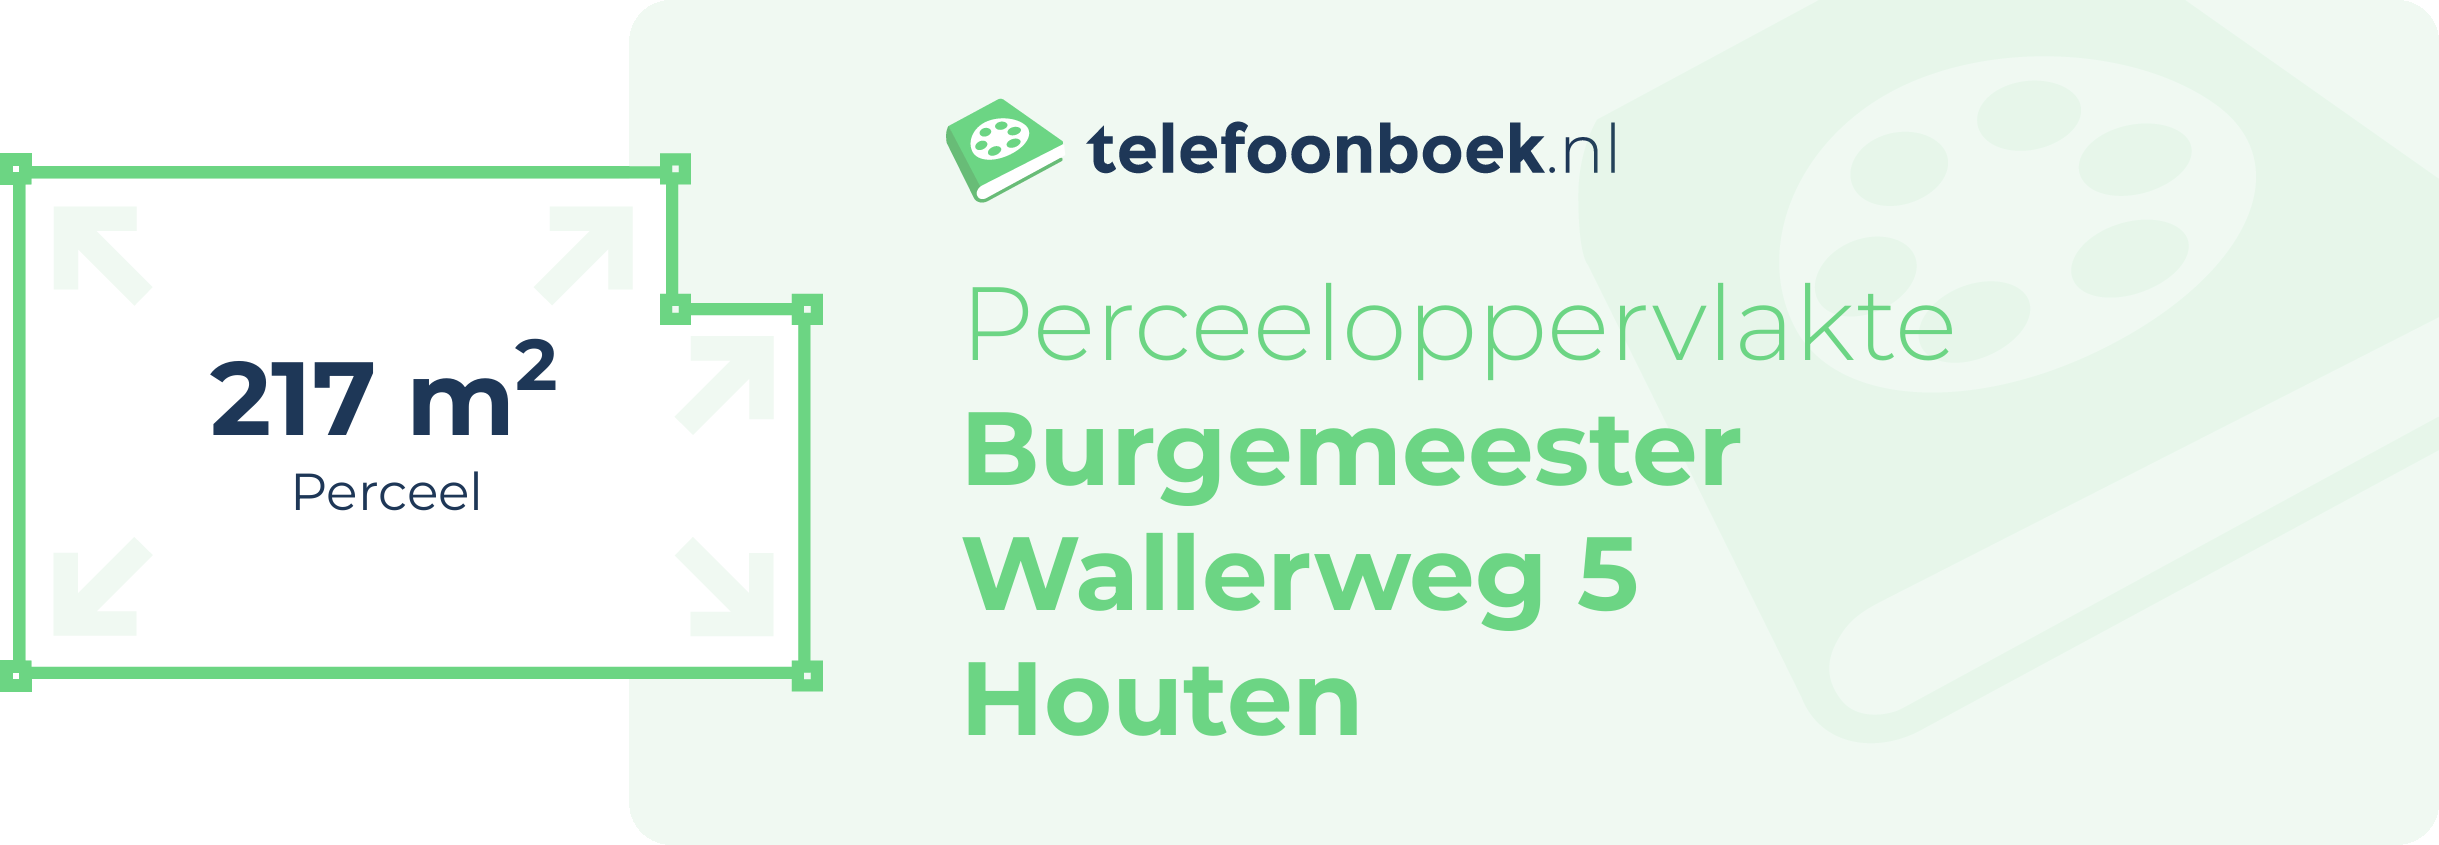 Perceeloppervlakte Burgemeester Wallerweg 5 Houten